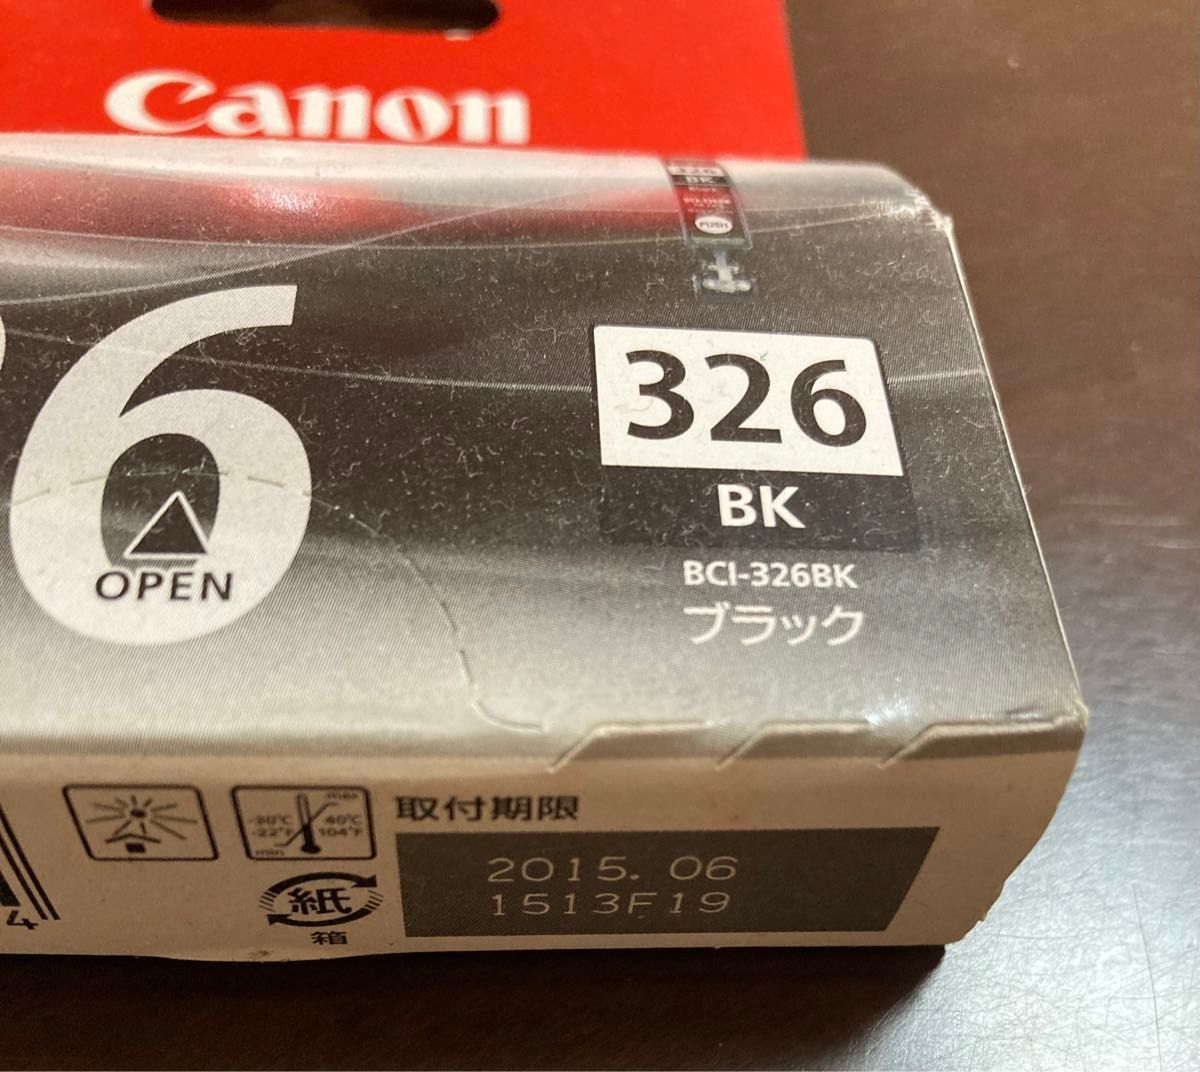 インクカートリッジ Canon PIXUS 326BK 期限切れ